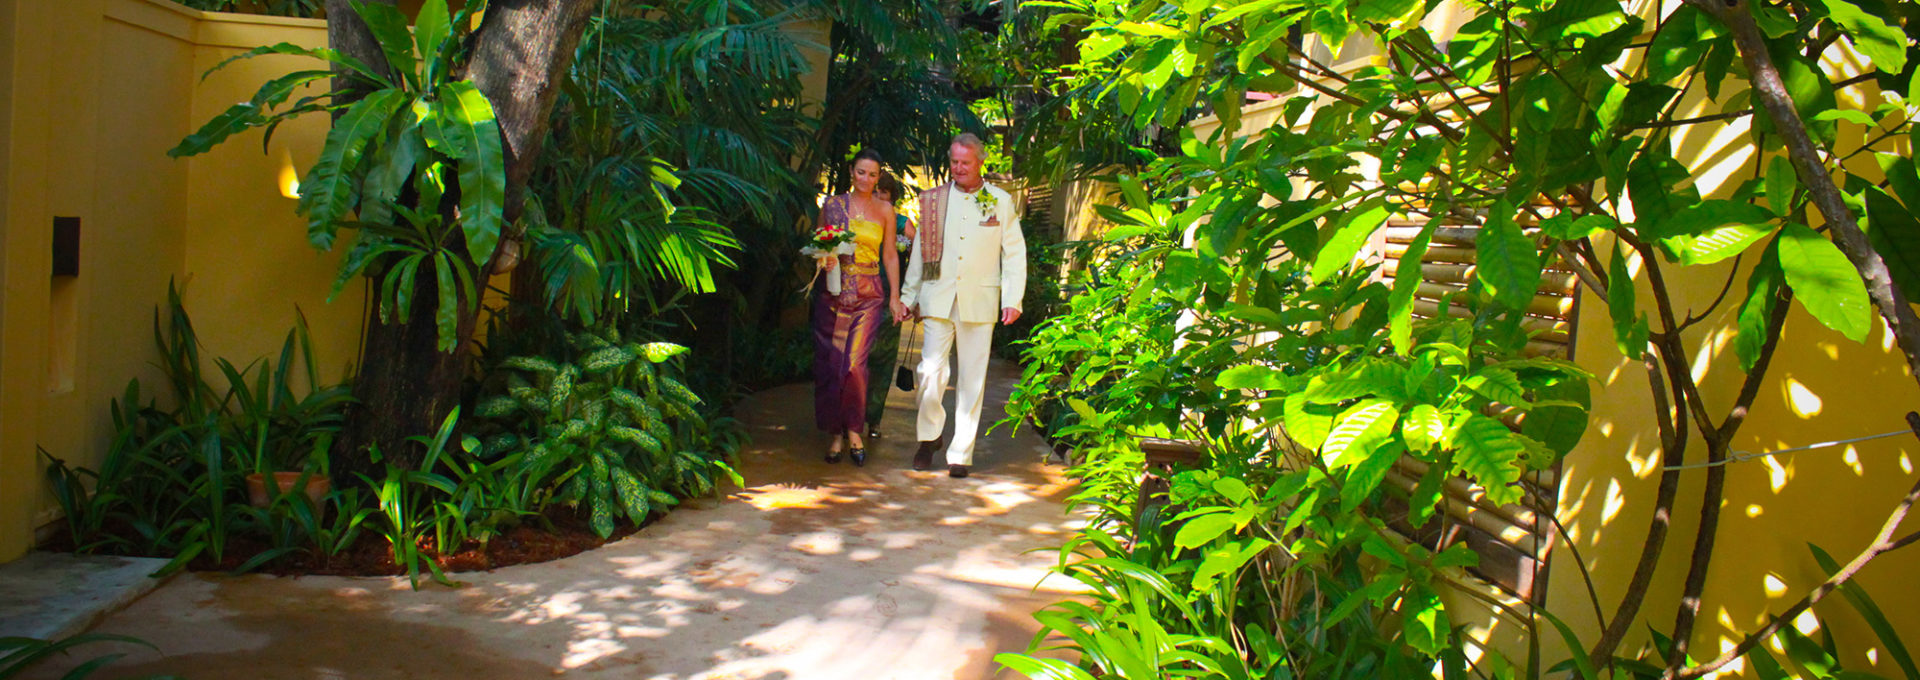 Samui island wedding